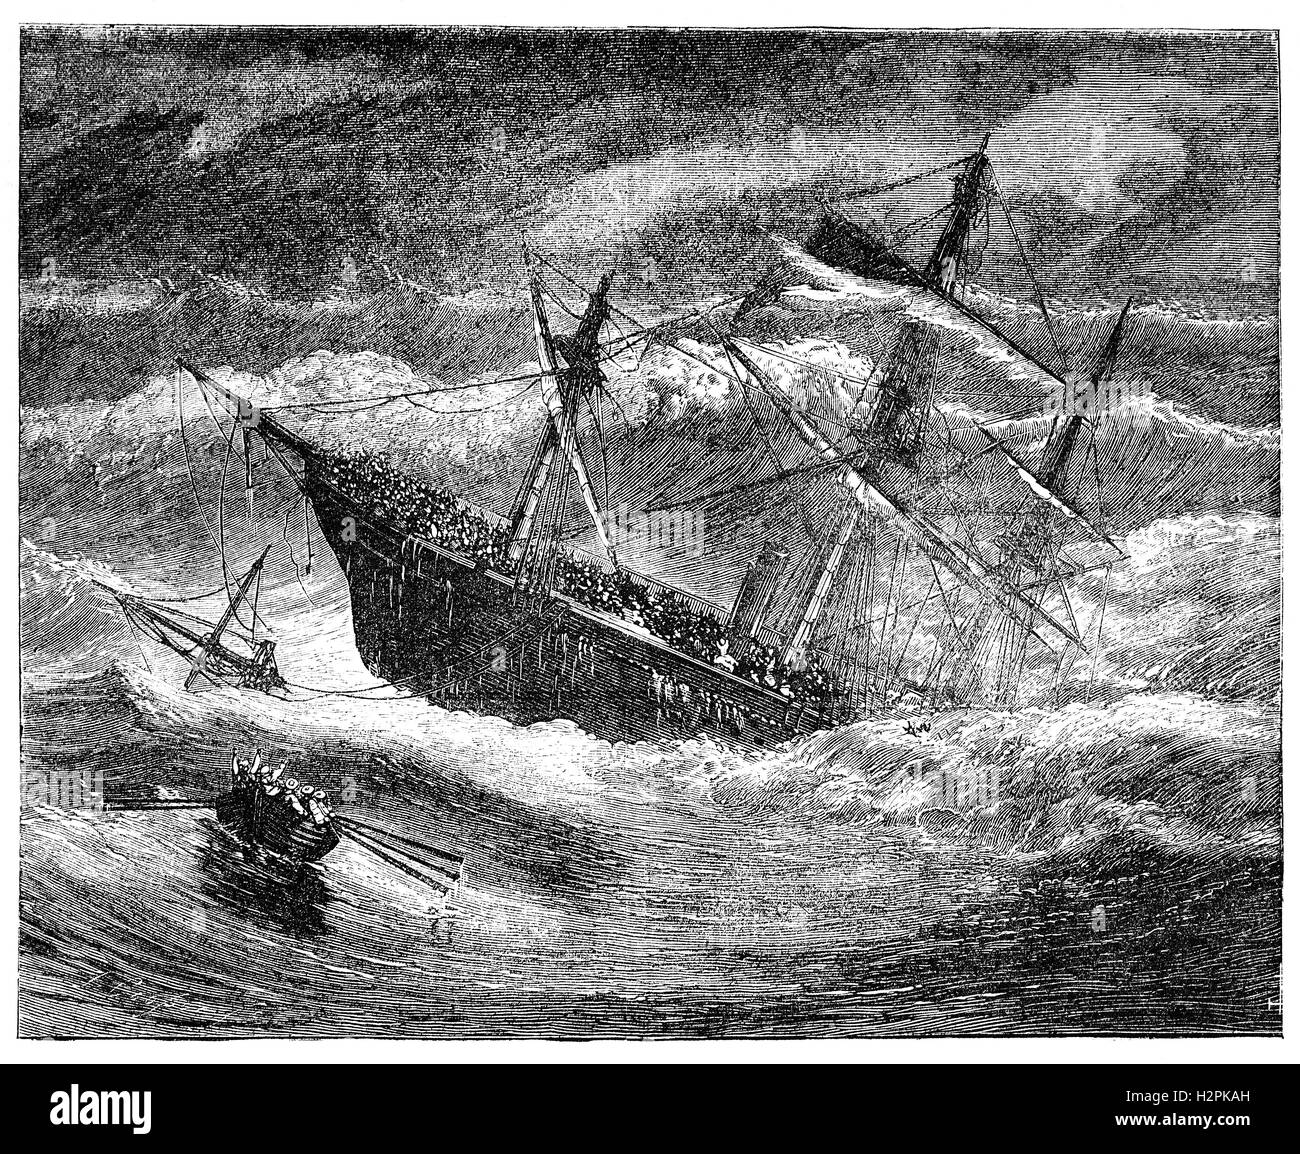 SS-London war ein britischer Dampfer die im Golf von Biskaya am 11. Januar 1866 sank. Das Schiff war unterwegs von Gravesend in England nach Melbourne, Australien, als sie begann, in Wasser. Das Schiff war mit Fracht überladen und seetüchtigen.  Nur 19 Überlebende konnten die lahmende Schiff durch Rettungsboot, entkommen eine Todesrate von 220 verlassen. Sein Verlust erhöhte Aufmerksamkeit in Großbritannien auf den gefährlichen Zustand der Schiffe durch skrupellose Reeder überlastet und hatte eine Hauptrolle in Samuel Plimsoll Kampagne zur reform der Versand Stockfoto